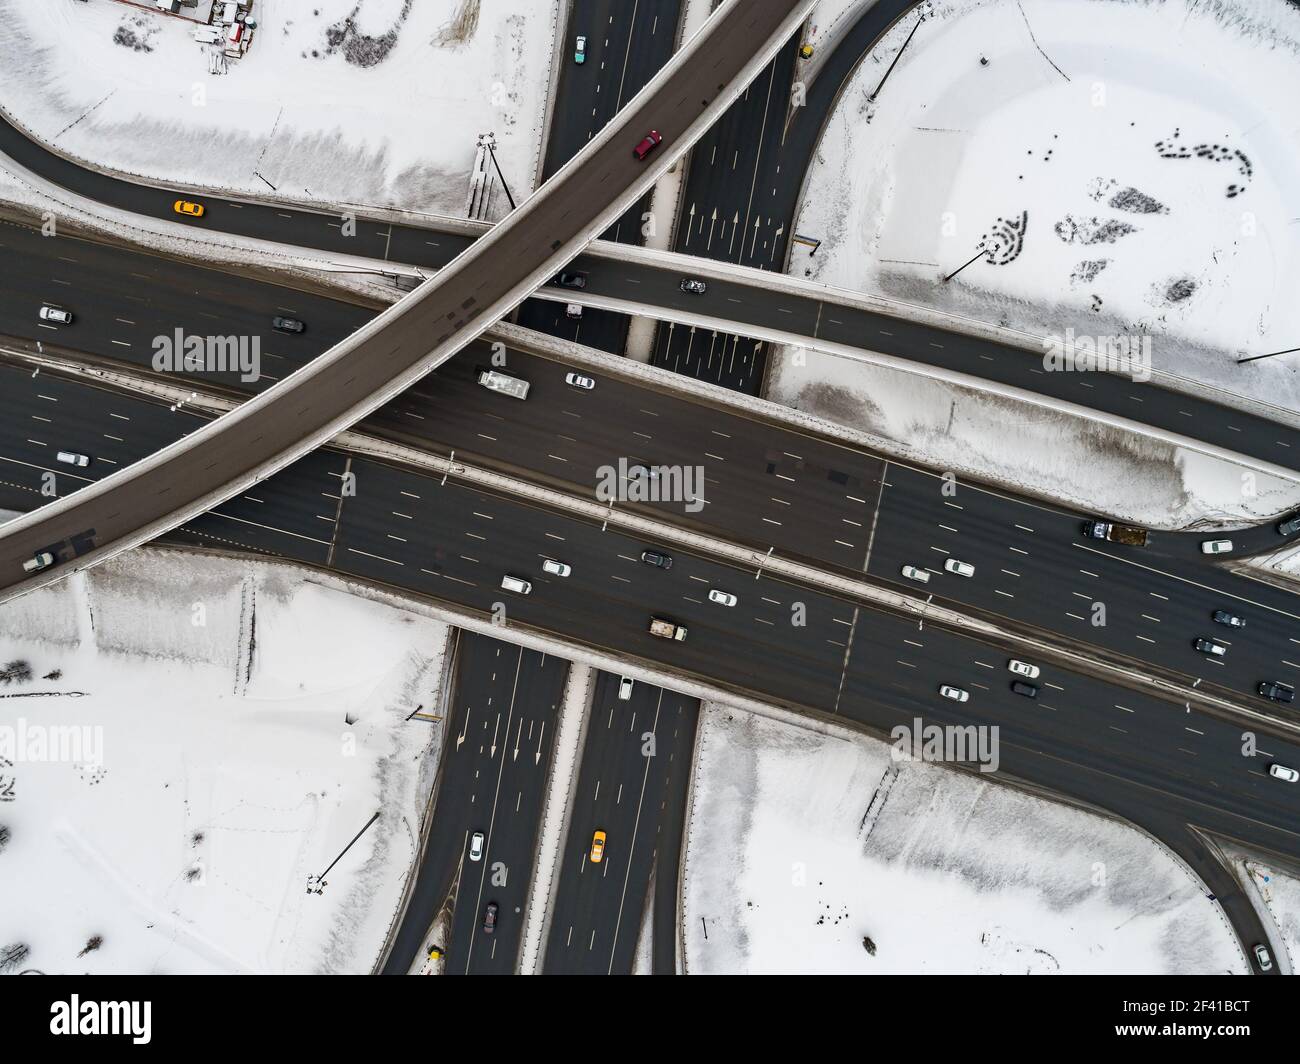 Luftaufnahme von einem autobahnkreuz Schnee im Winter. Stockfoto